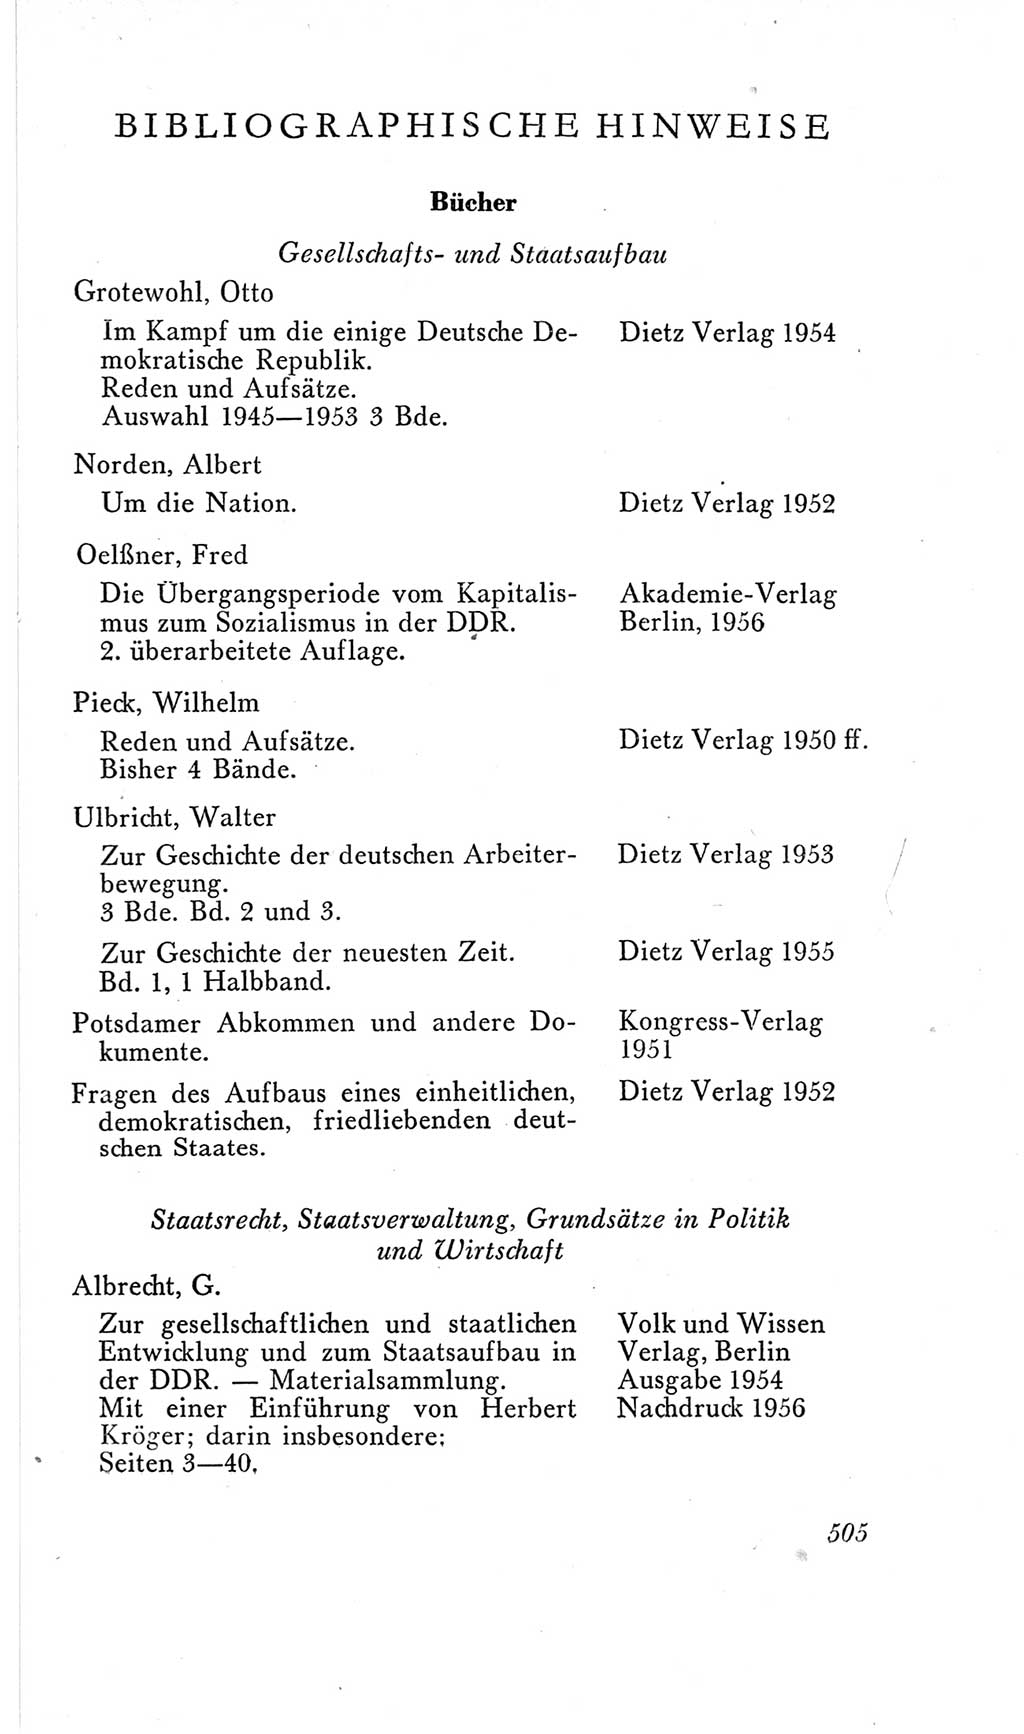 Handbuch der Volkskammer (VK) der Deutschen Demokratischen Republik (DDR), 2. Wahlperiode 1954-1958, Seite 505 (Hdb. VK. DDR, 2. WP. 1954-1958, S. 505)